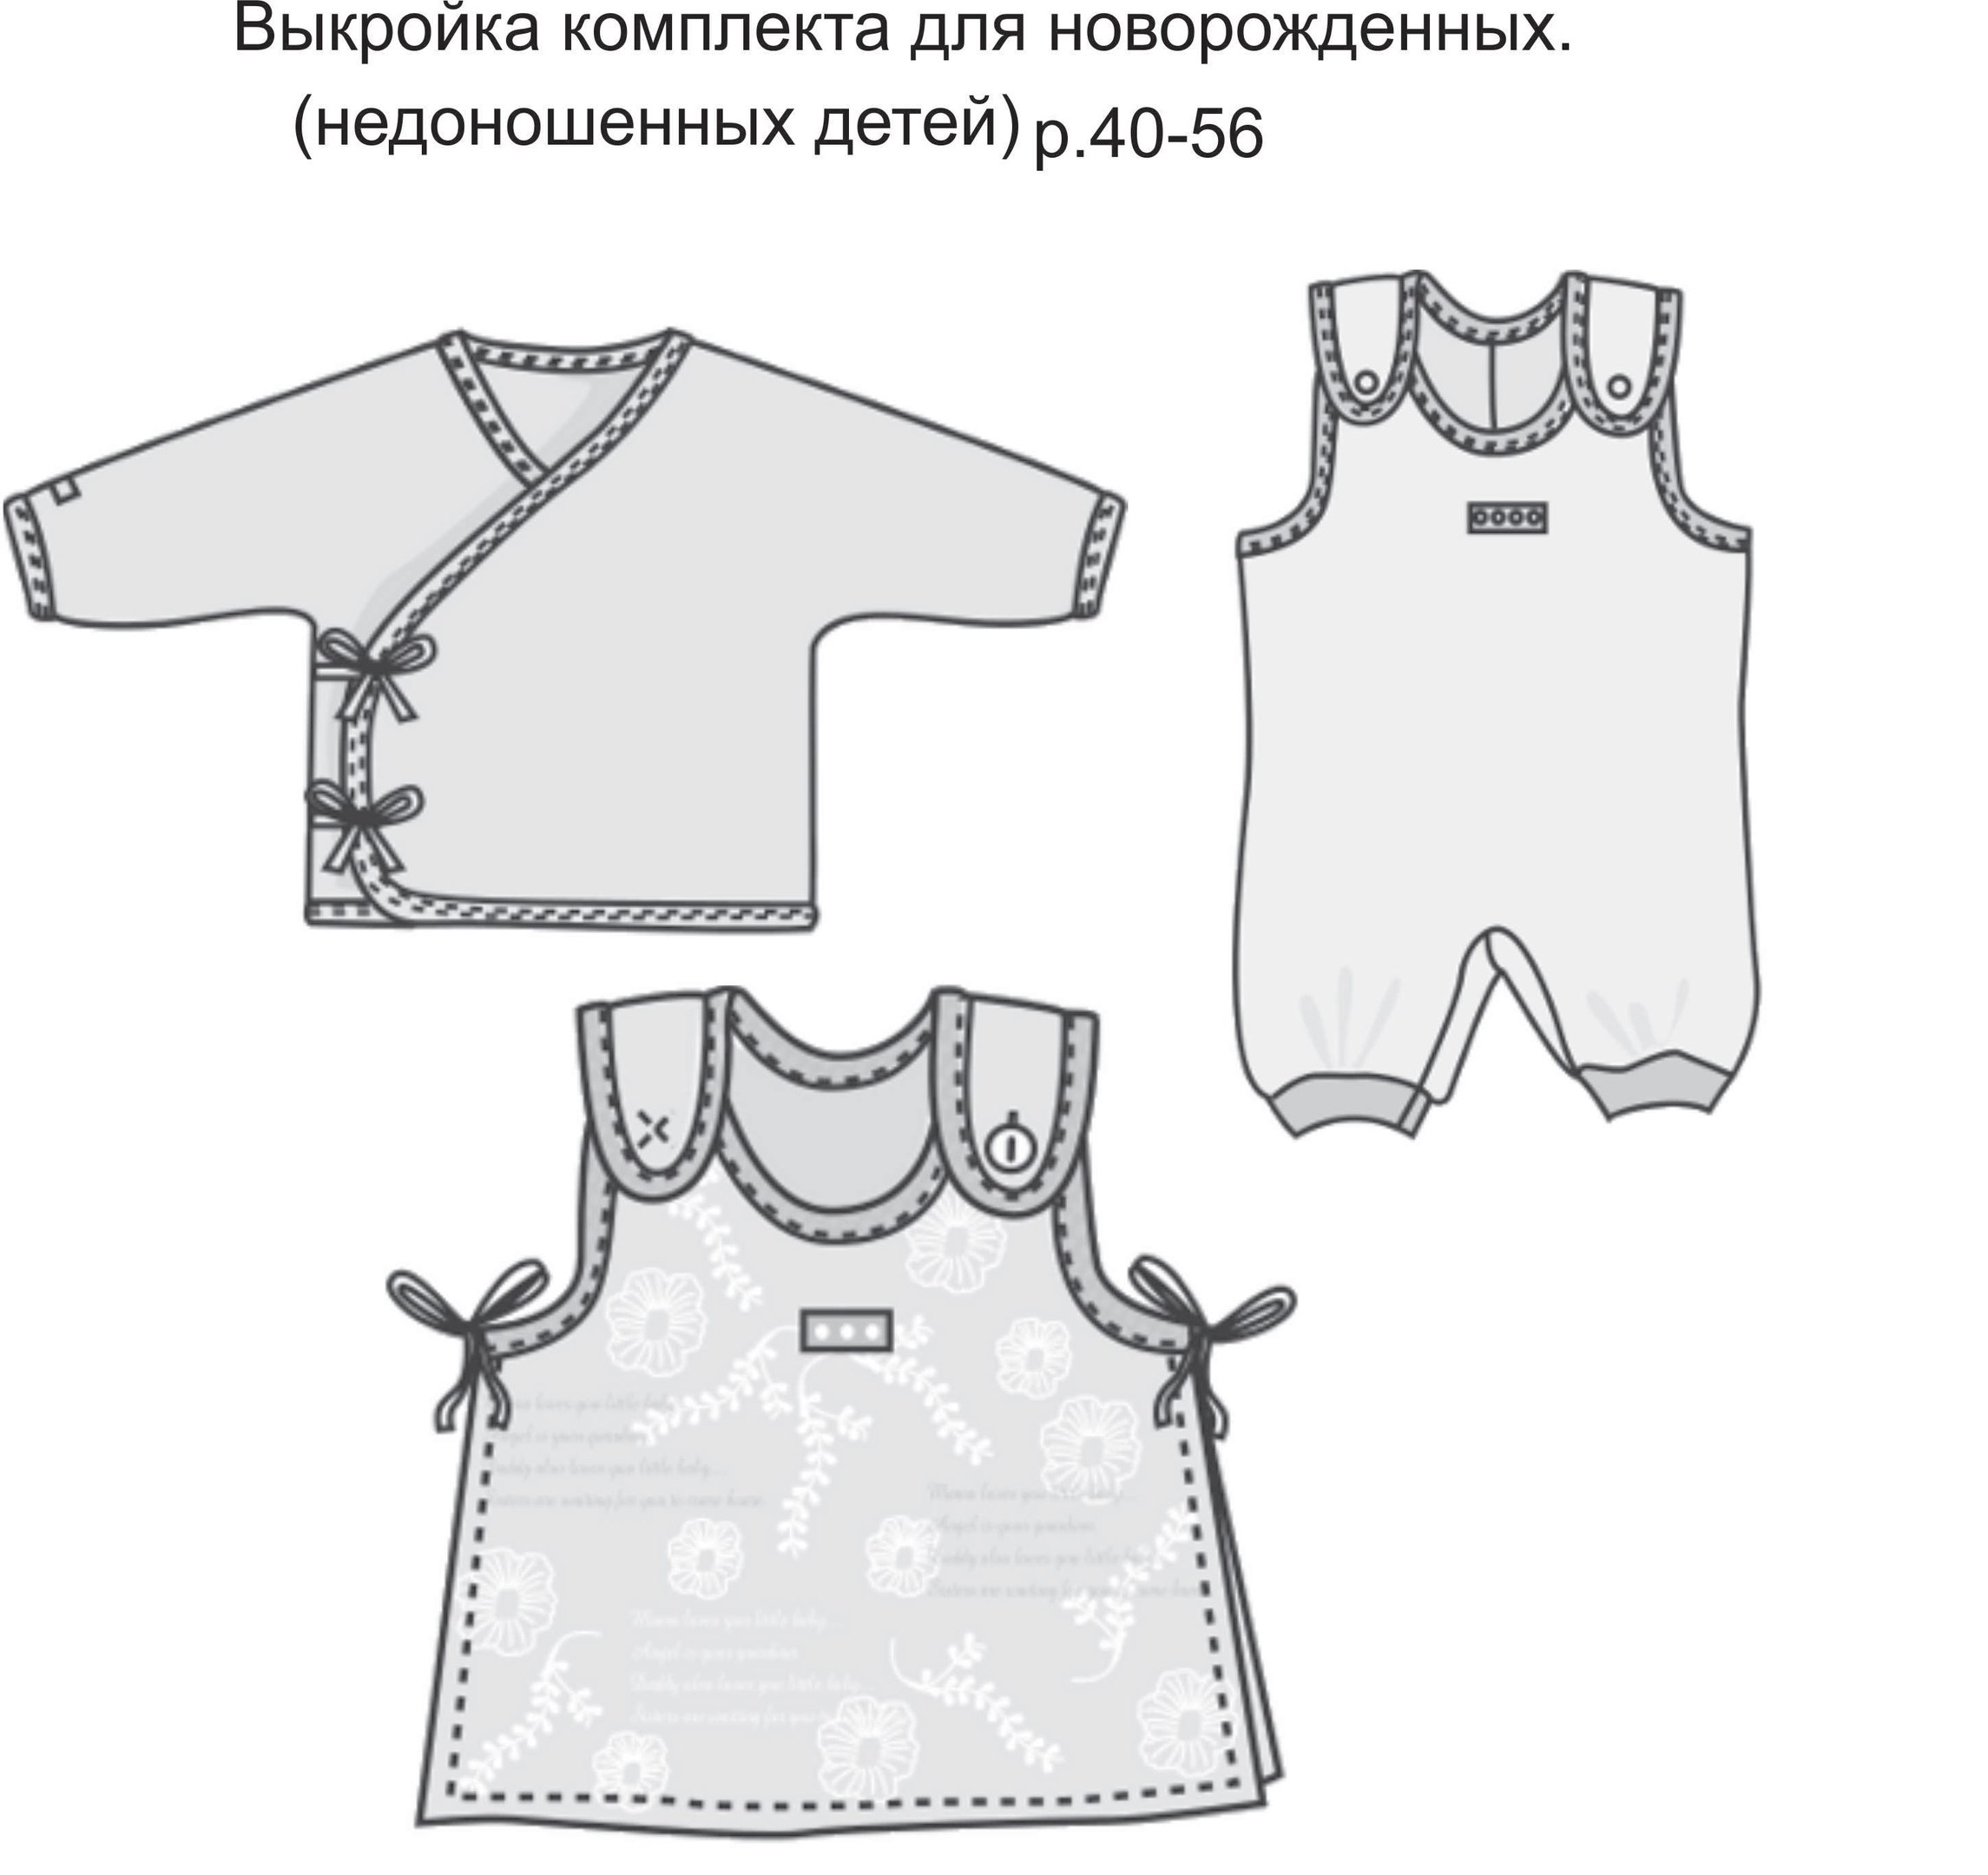 Одежда для новорожденного своими руками | Шить просто — l2luna.ru